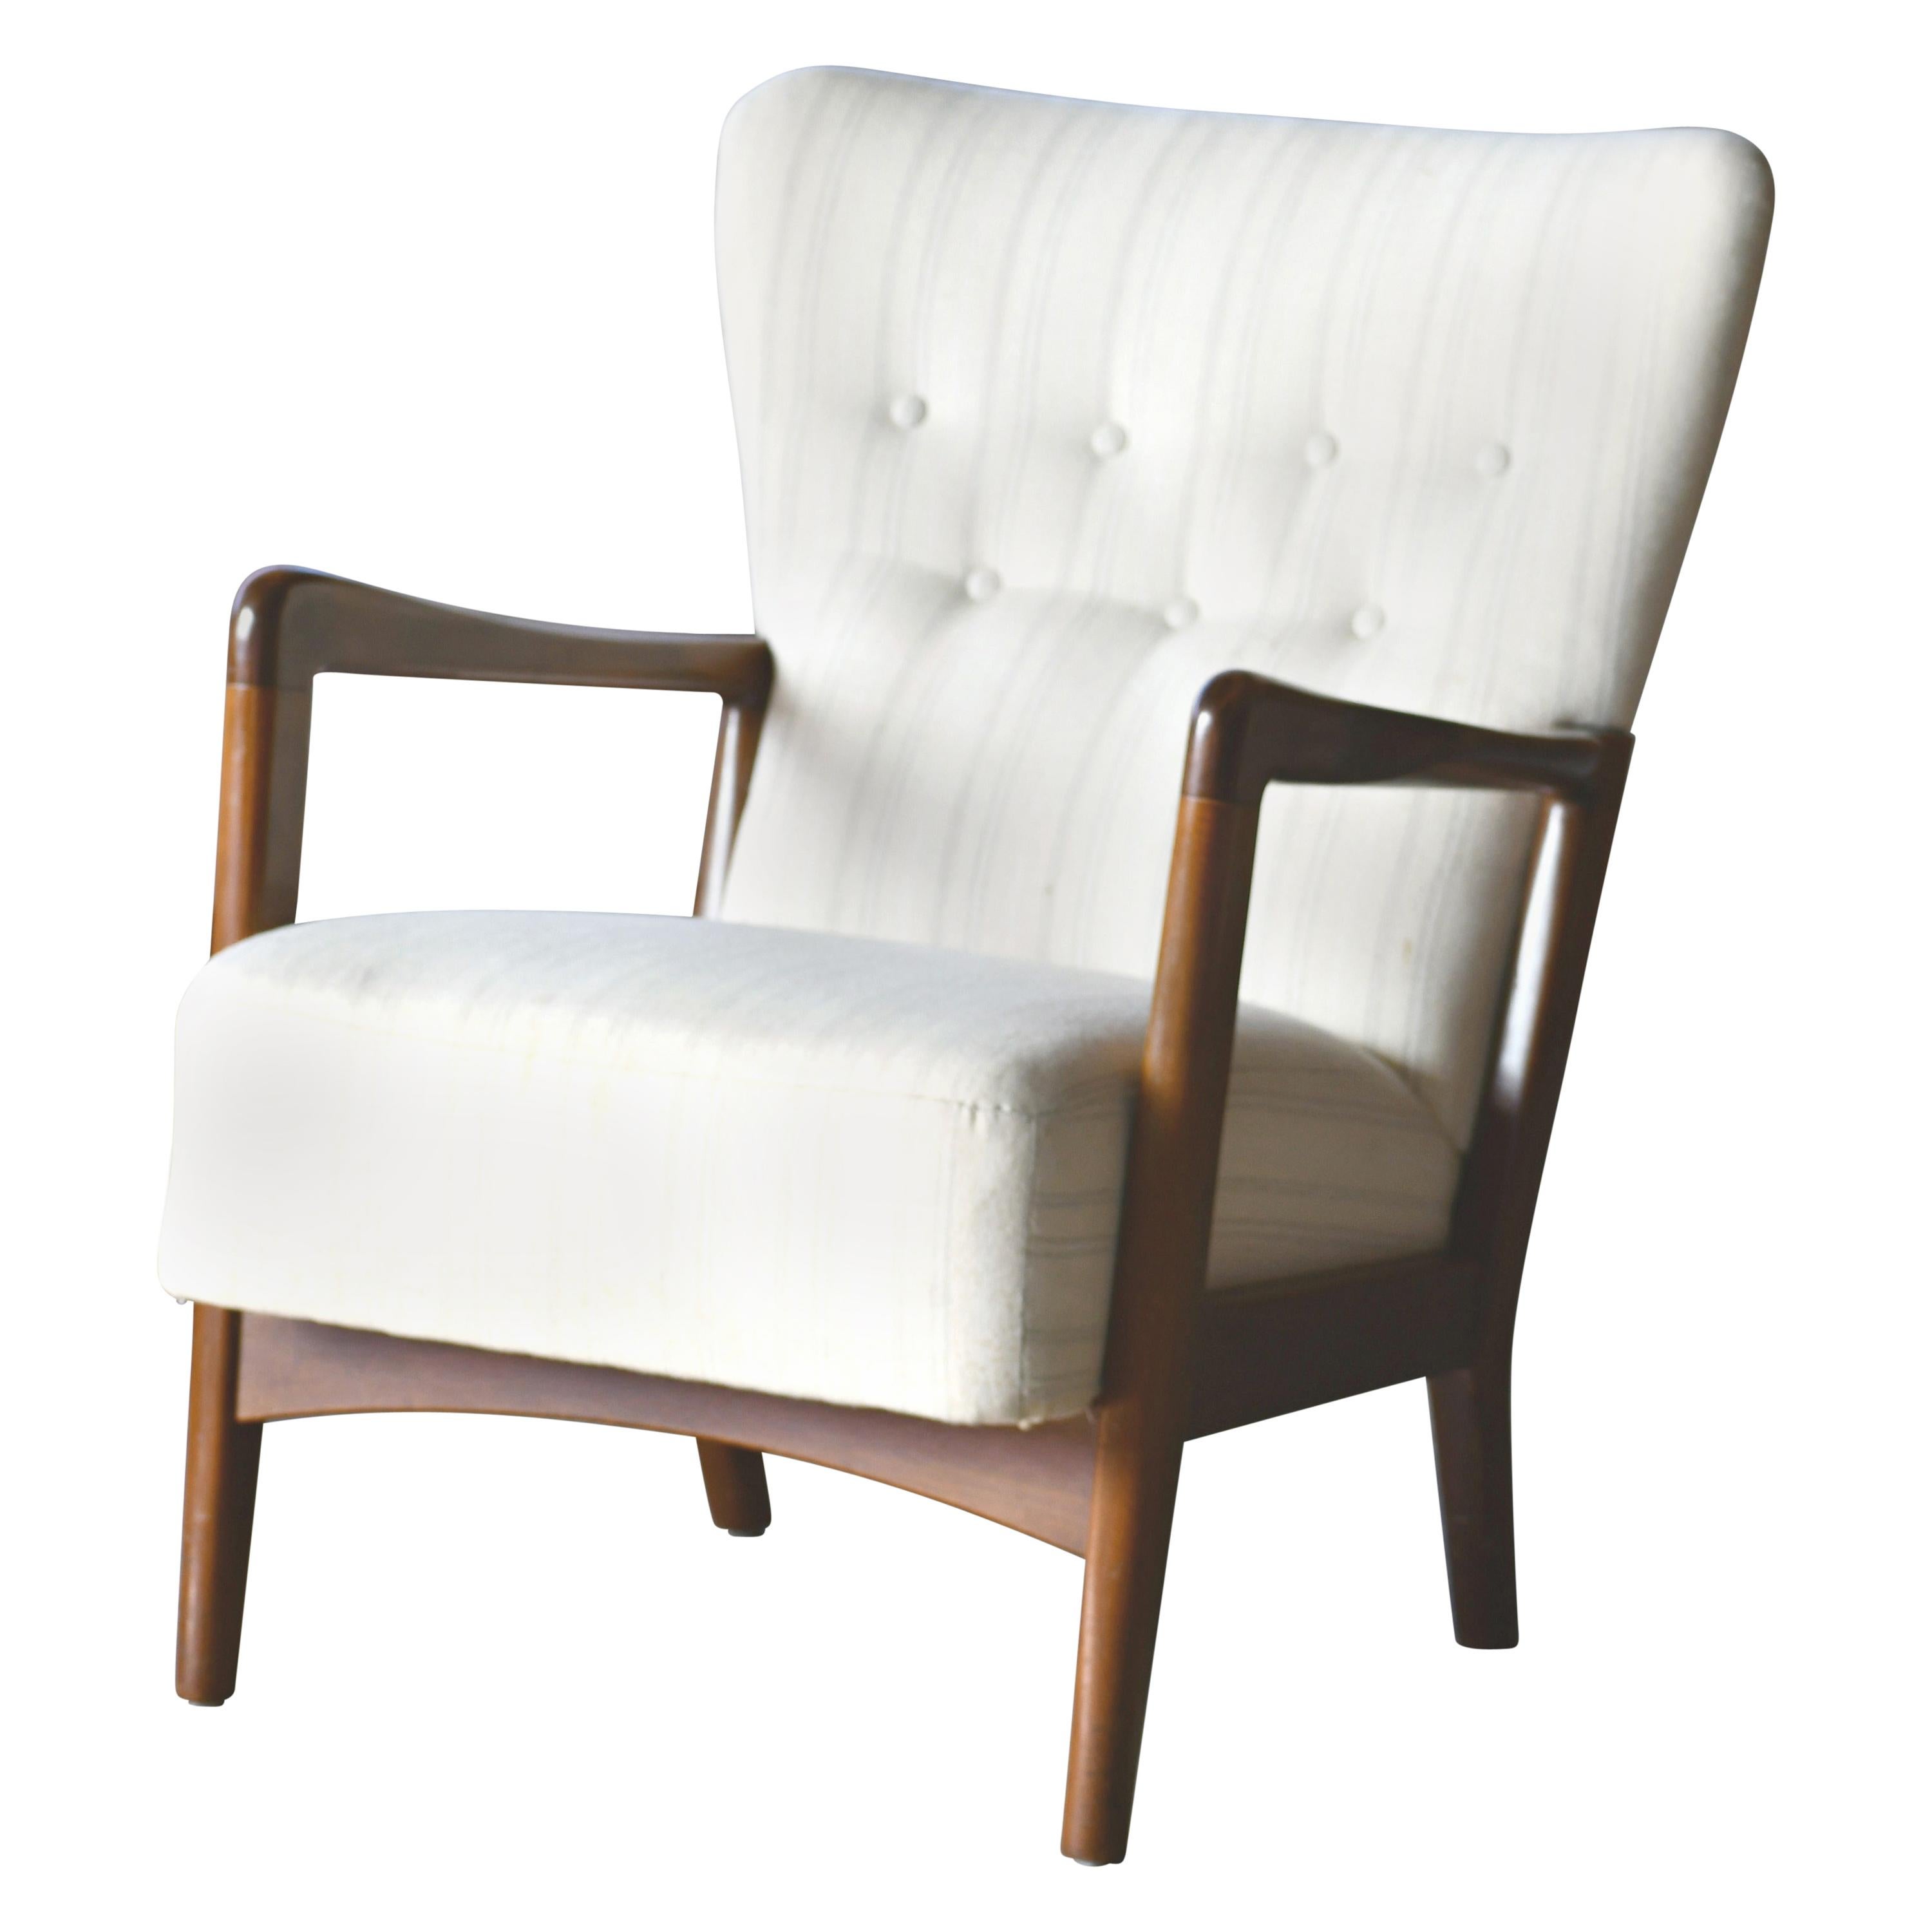 Danish 1940s Lowback Open Armrest Lounge Chair by Soren Hansen for Fritz Hansen